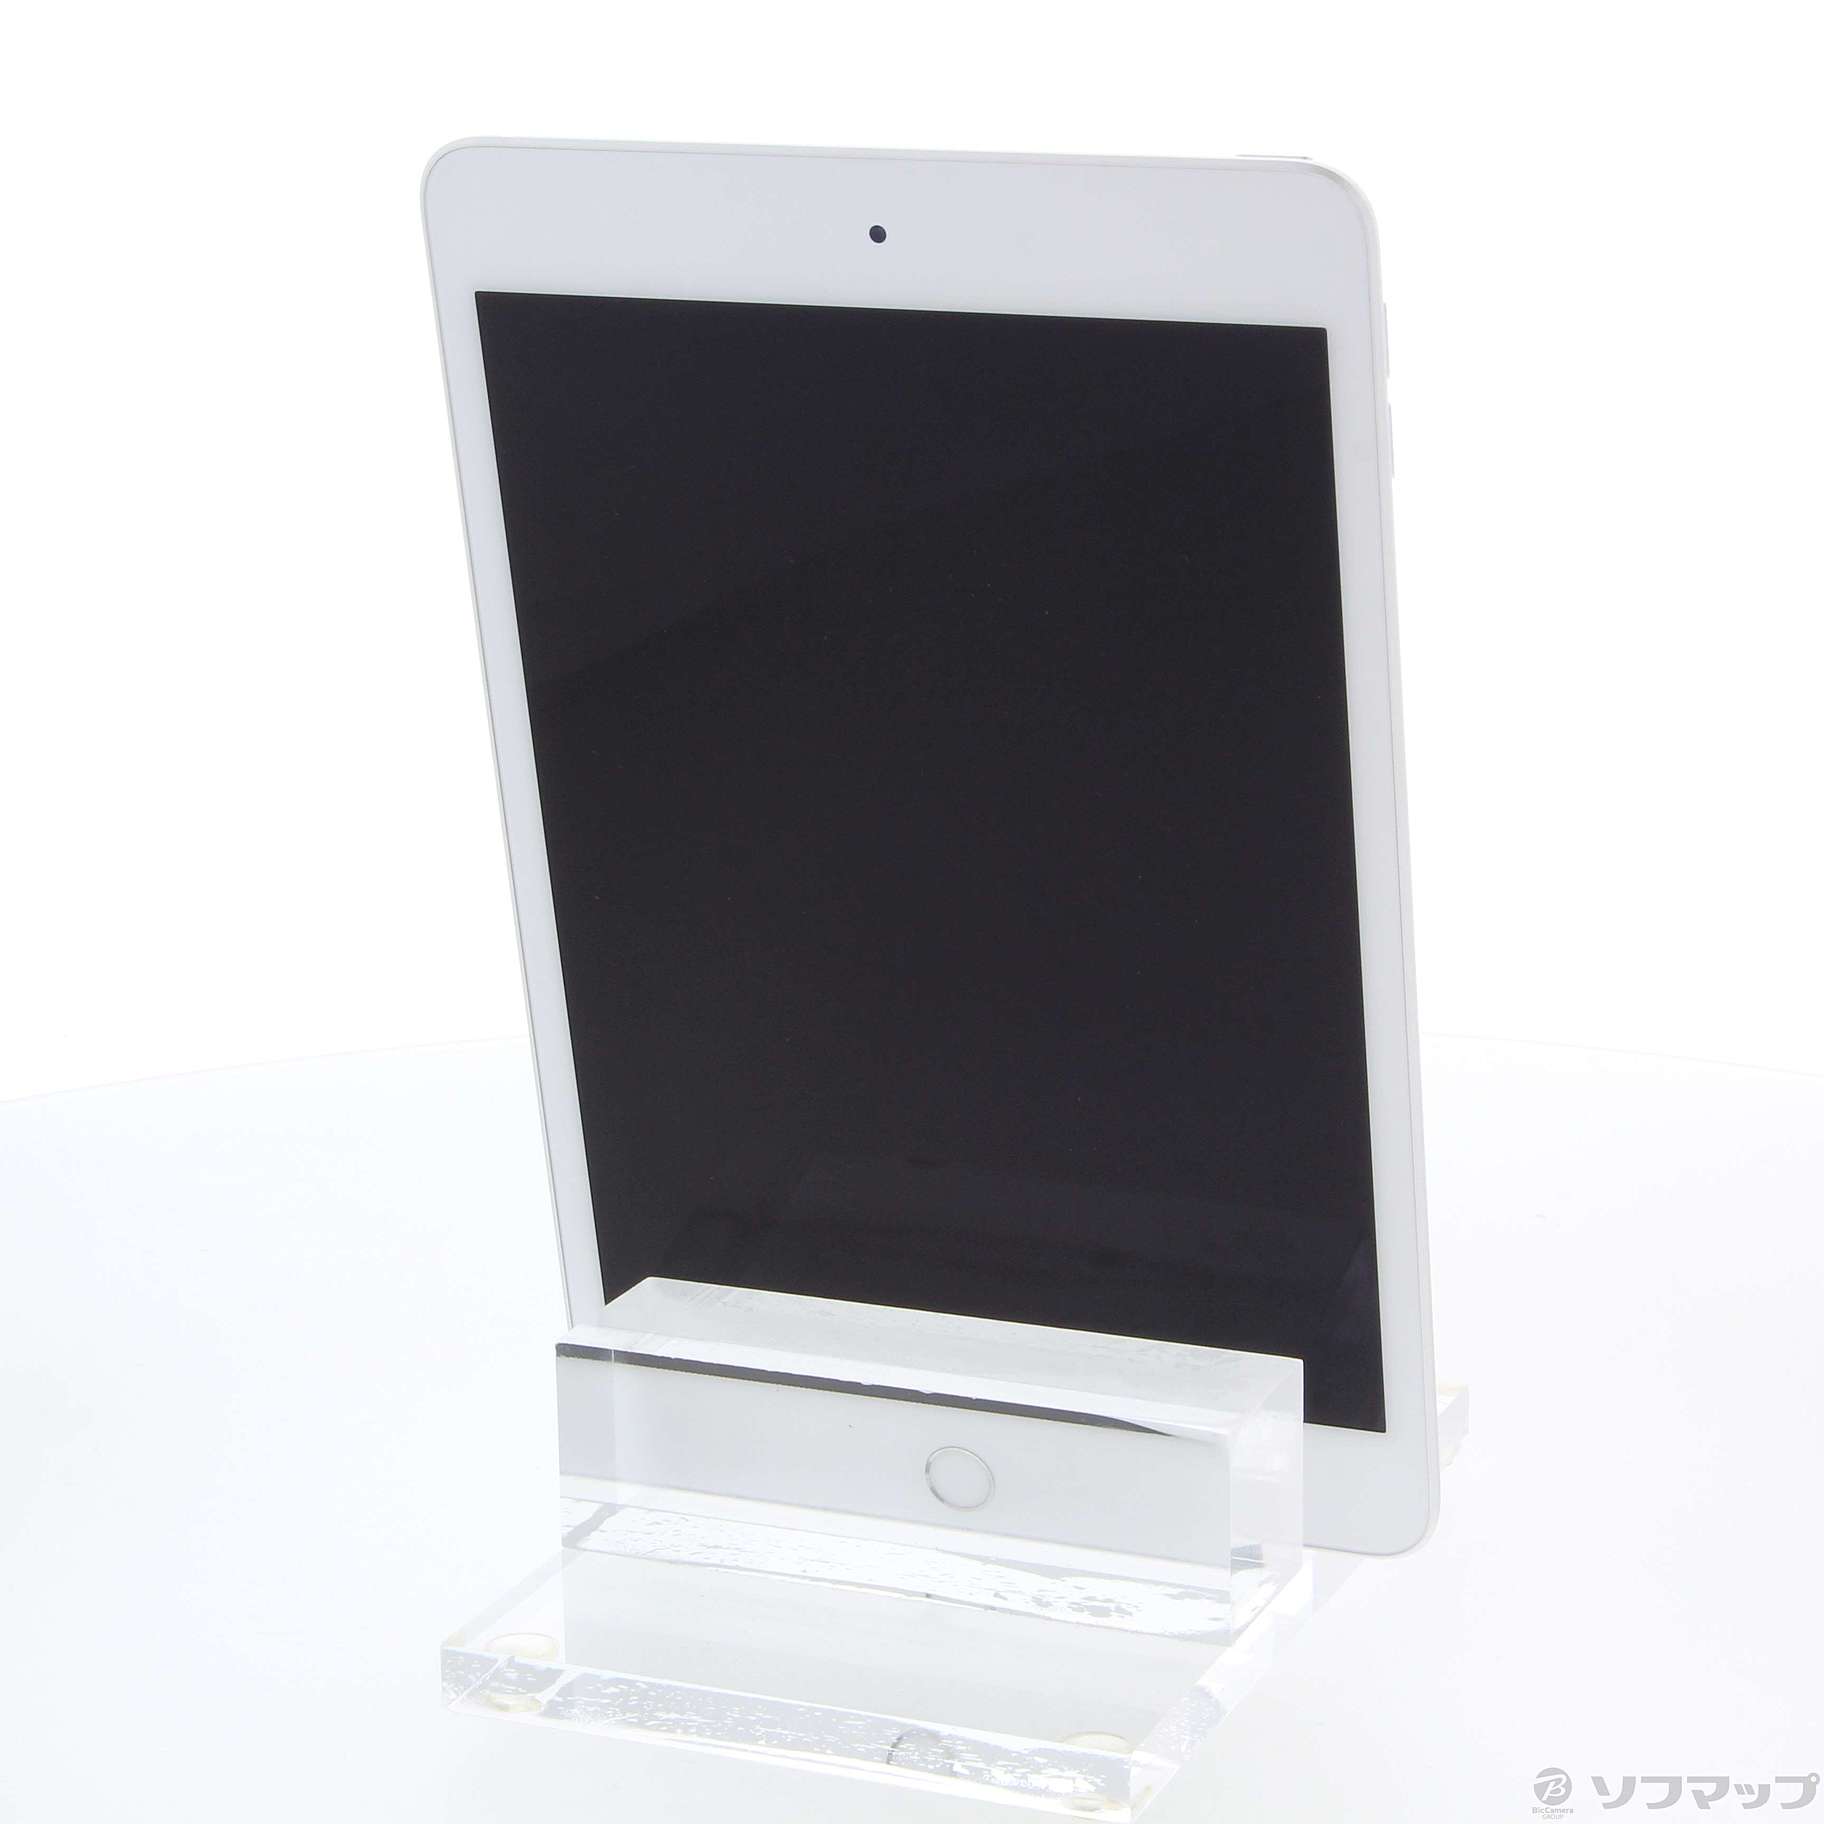 MUQX2J/A シルバー iPad mini 7.9㌅ wifi 64gb